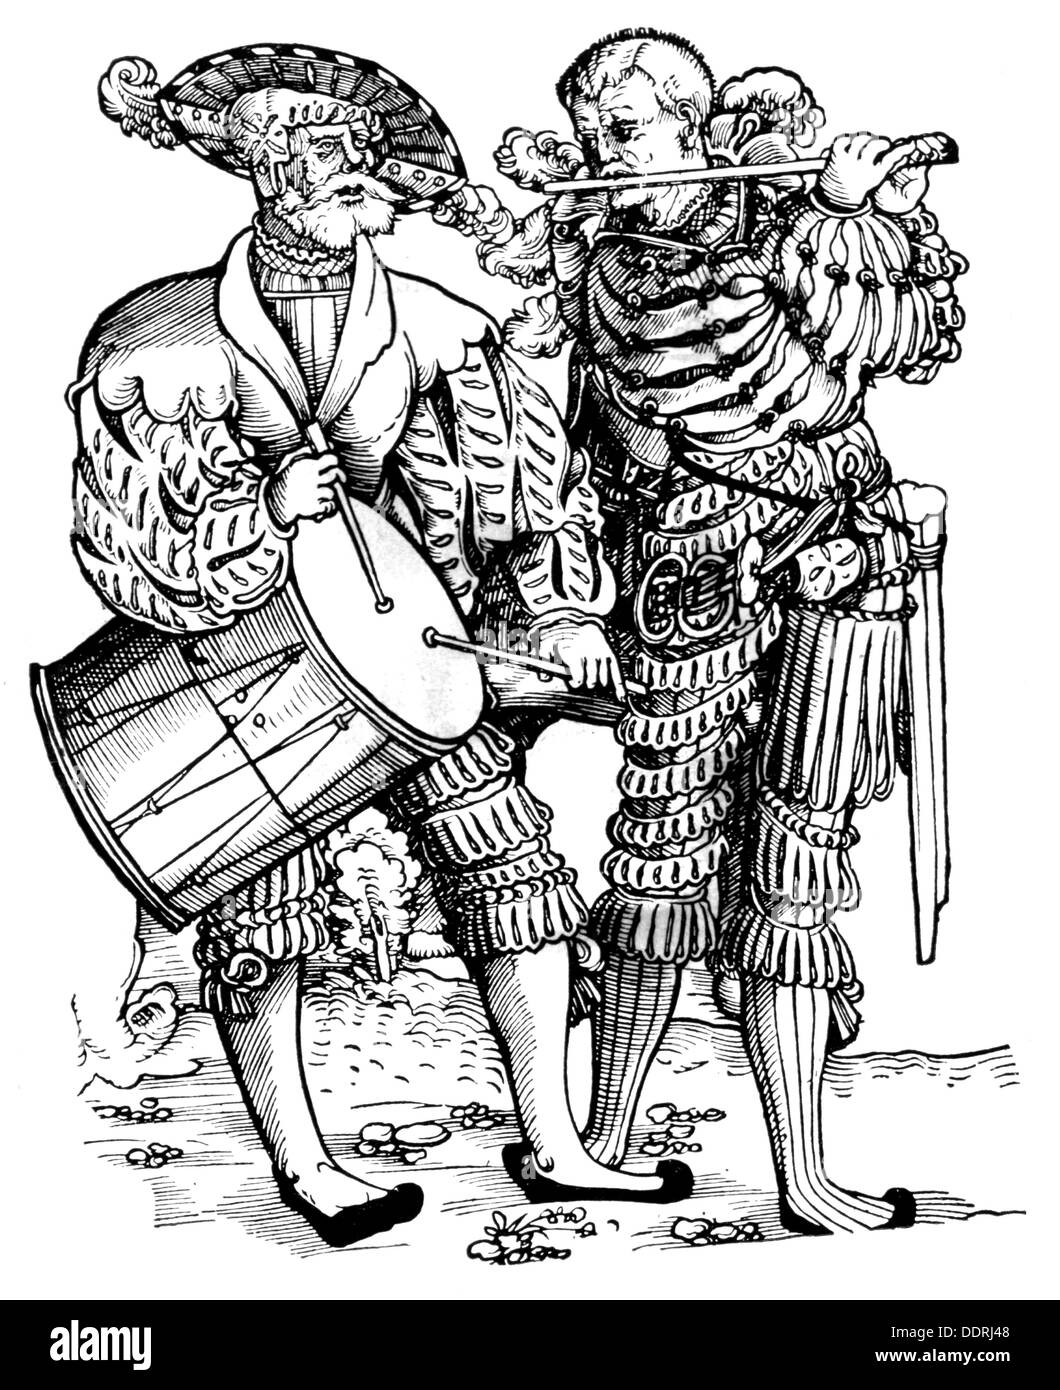 Militaire, lansquenet, batteur et joueur de cornemuse, coupe de bois par Niklas Stoer, vers 1540, droits additionnels-Clearences-non disponible Banque D'Images